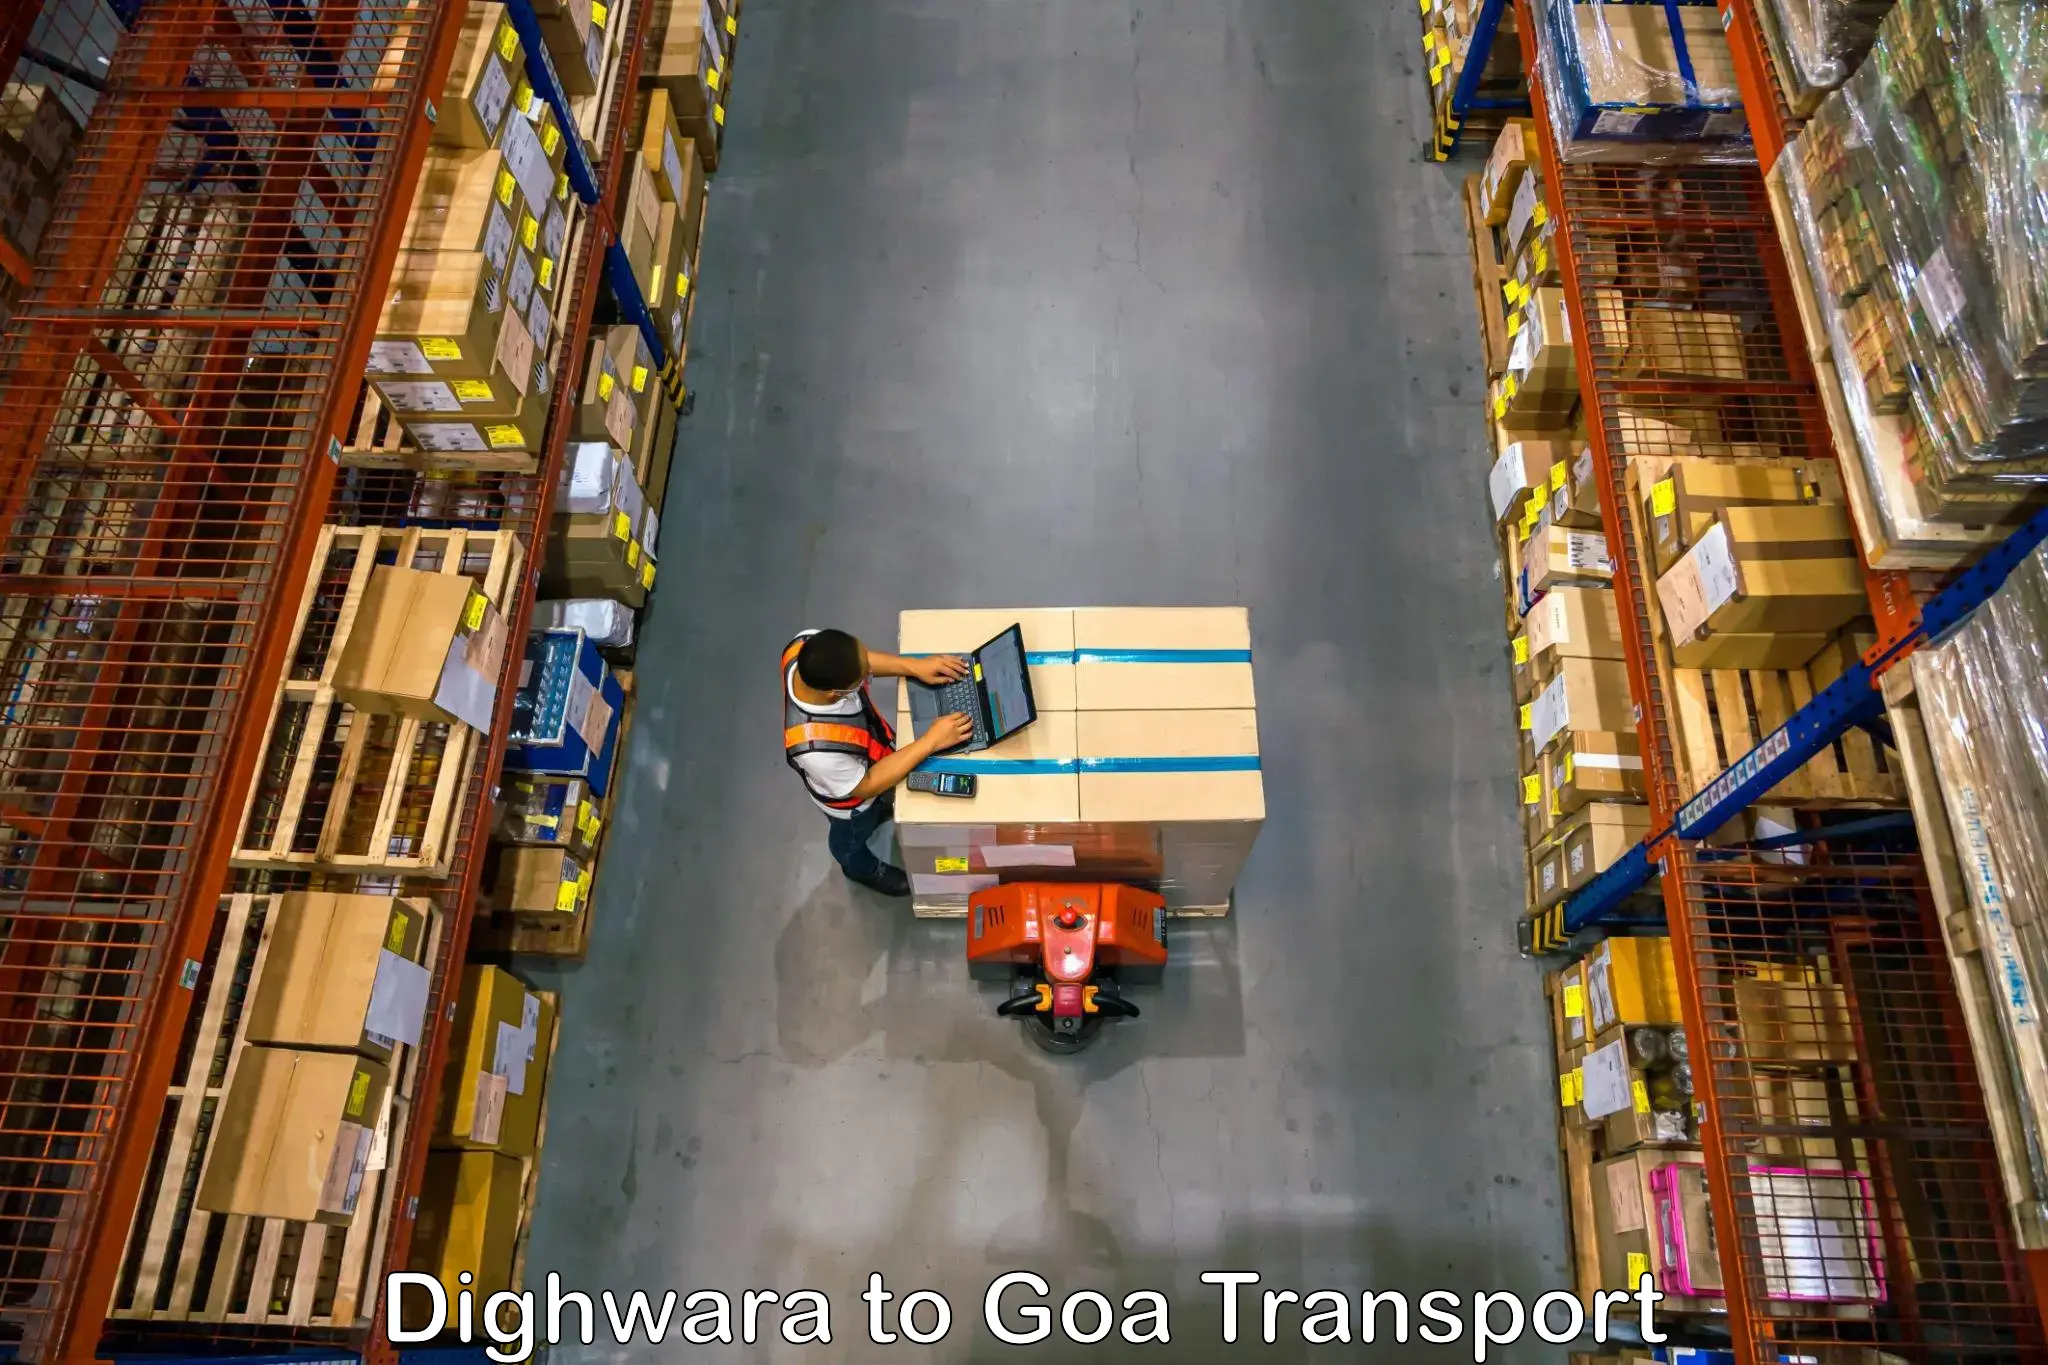 Transport in sharing Dighwara to NIT Goa